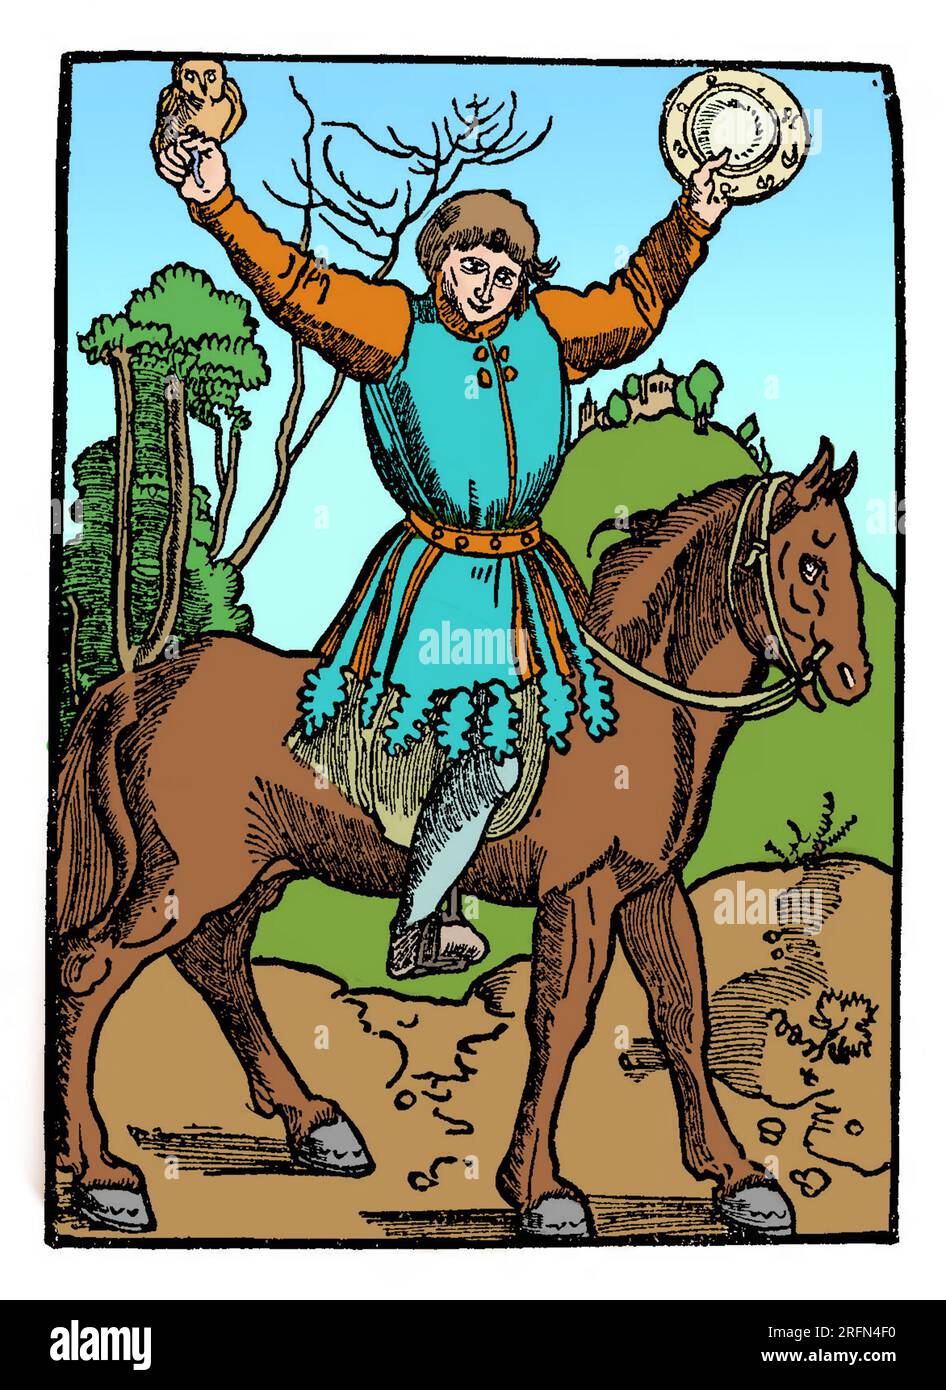 Till Eulenspiegel è una figura popolare del folklore tedesco che appare per la prima volta in un chapbook del 1515. E' un burattinaio che espone vizi. La sua vita è ambientata nella prima metà degli anni '1300 e muore di peste nel 1350. Il suo cognome significa letteralmente "gufo-specchio Foto Stock